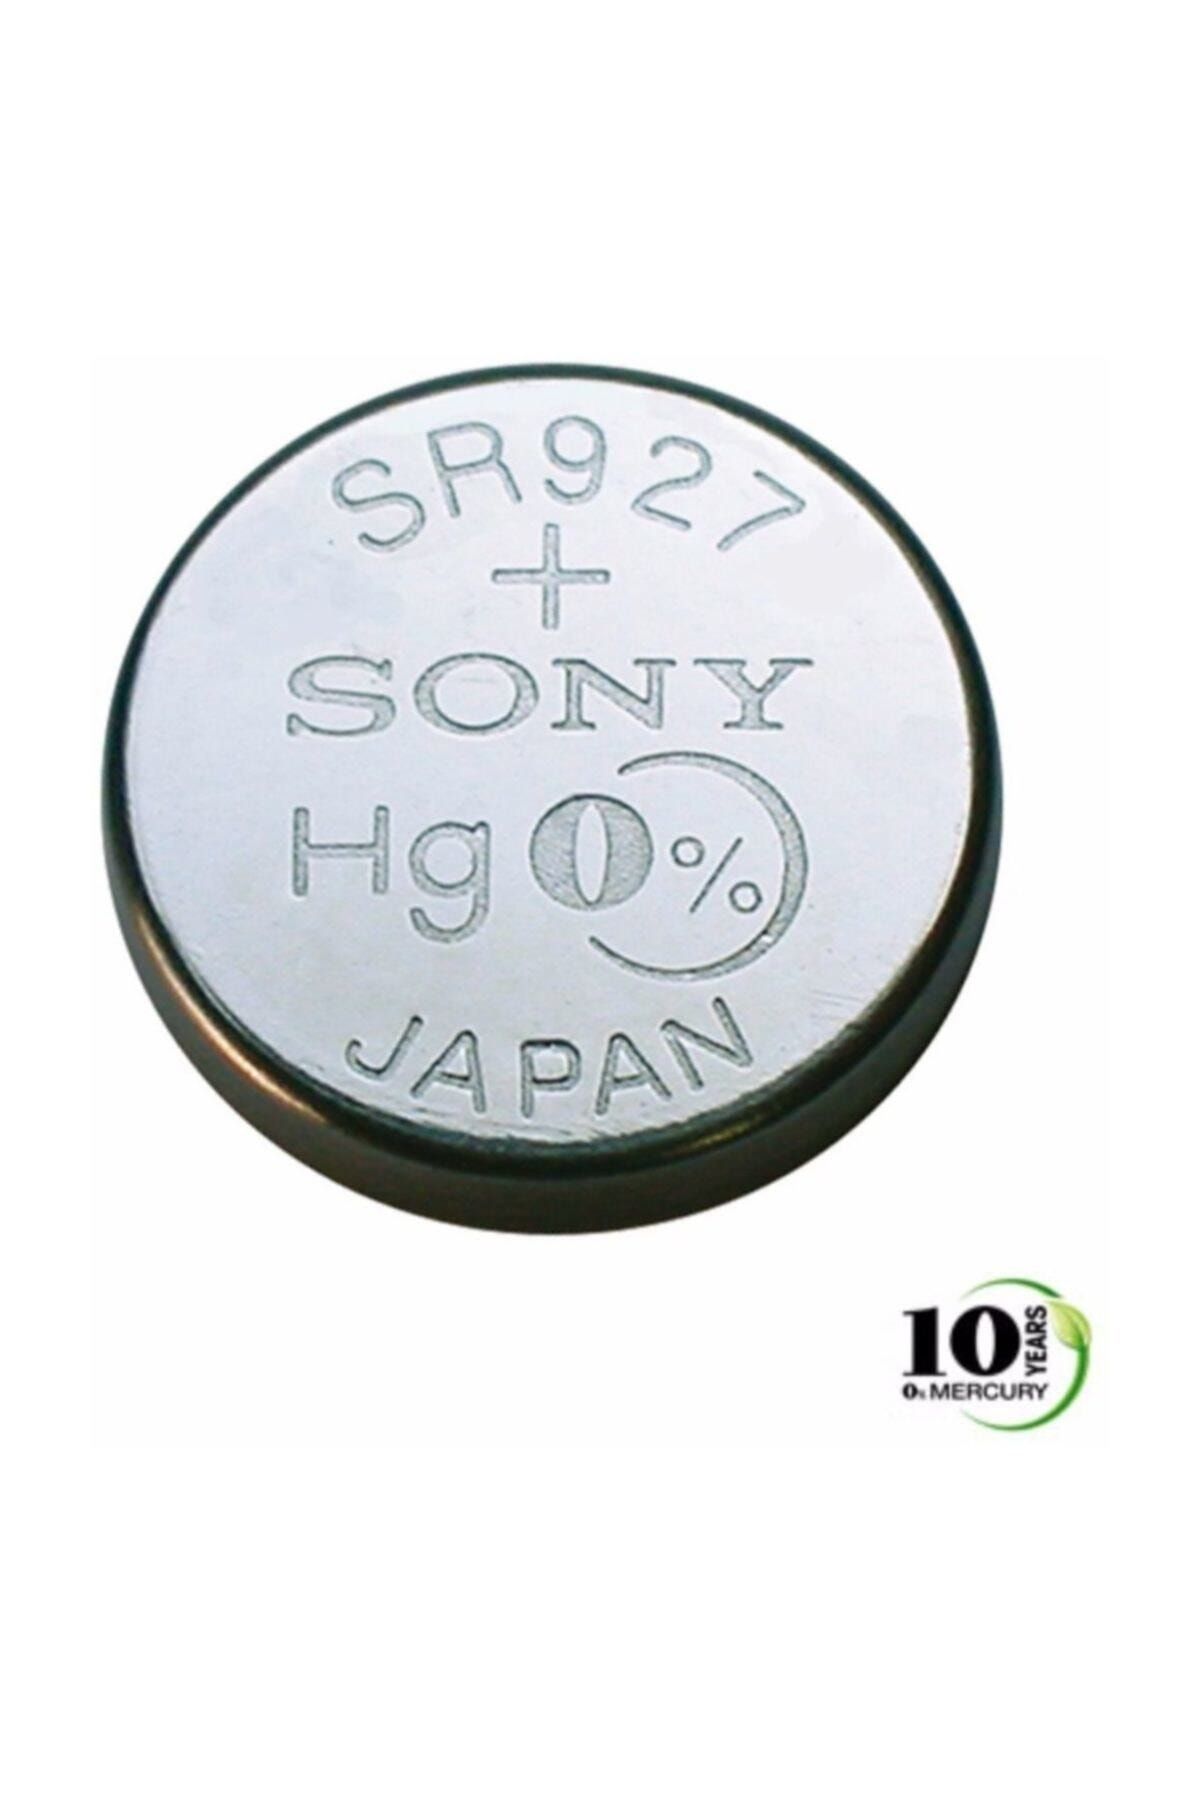 Sony Sr920sw Saat Pili Fiyatı, Yorumları - Trendyol